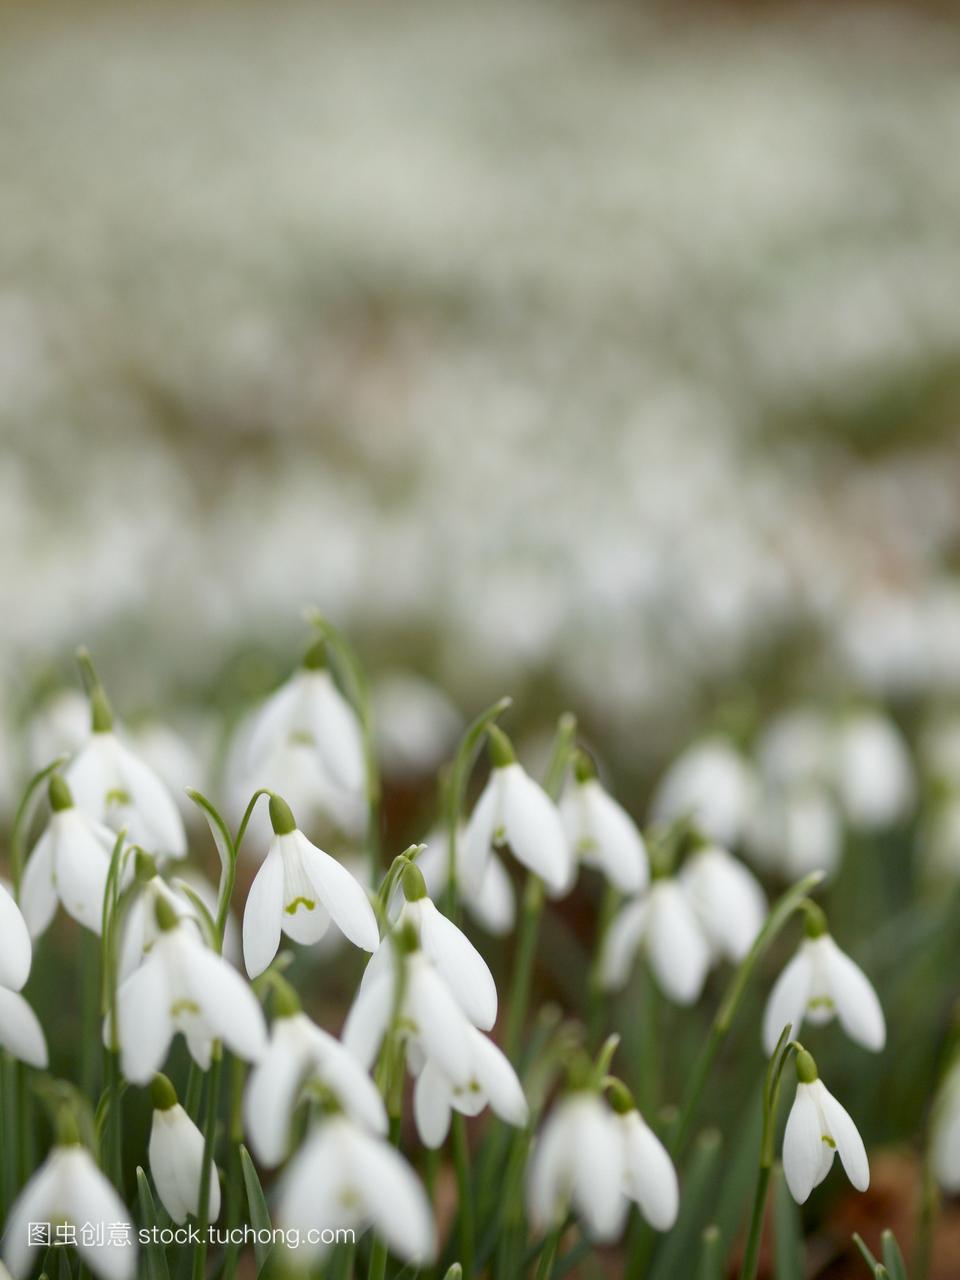 雪galanthusnivalis是英国最早的春花。通常被认